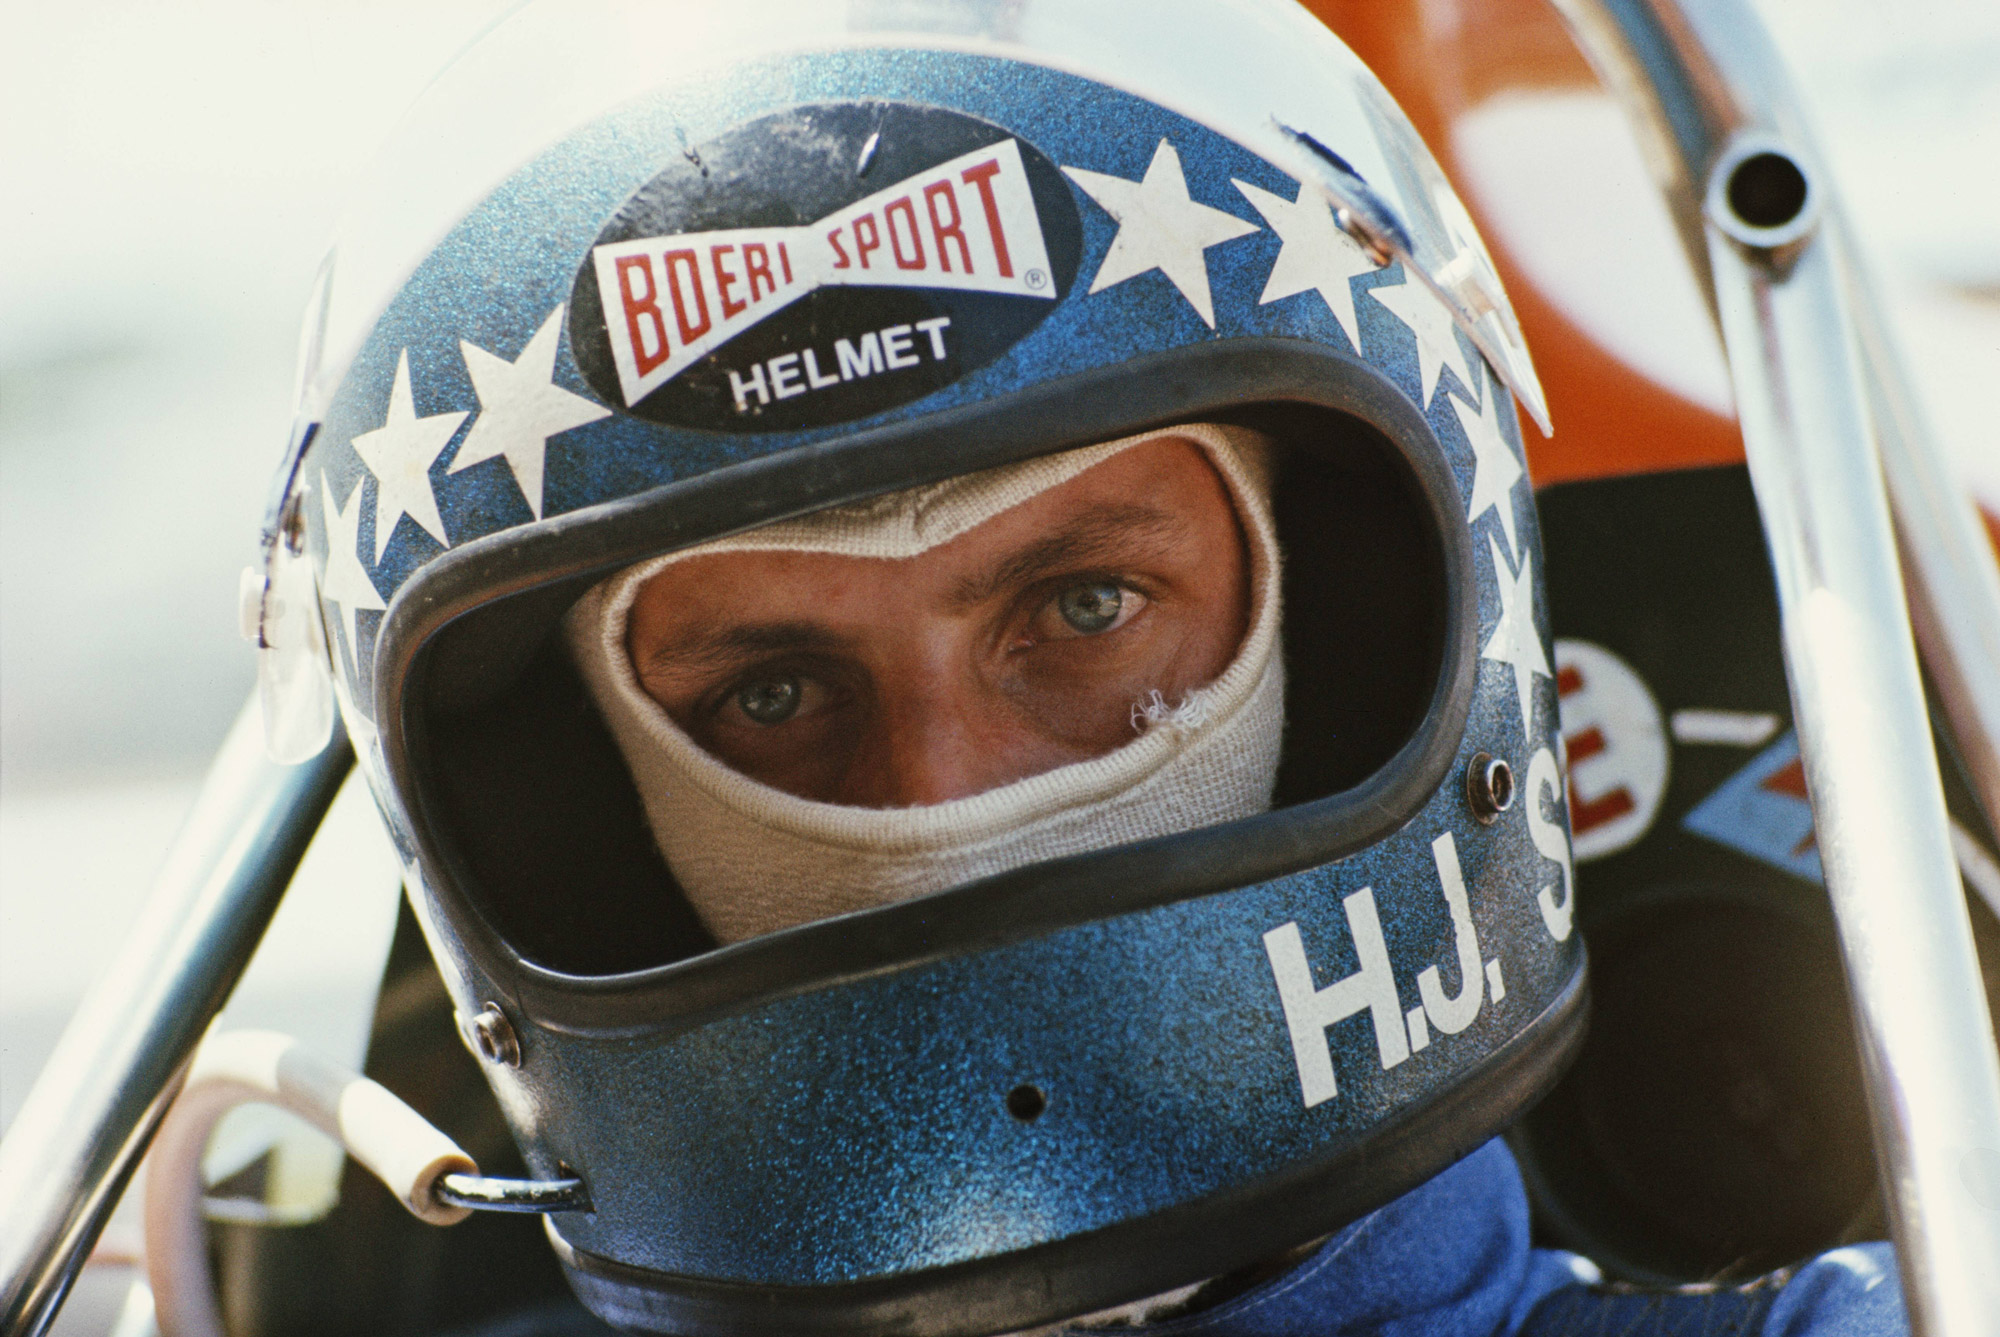 Race driver Hans-Joachim Stuck in blue helmet with white stars